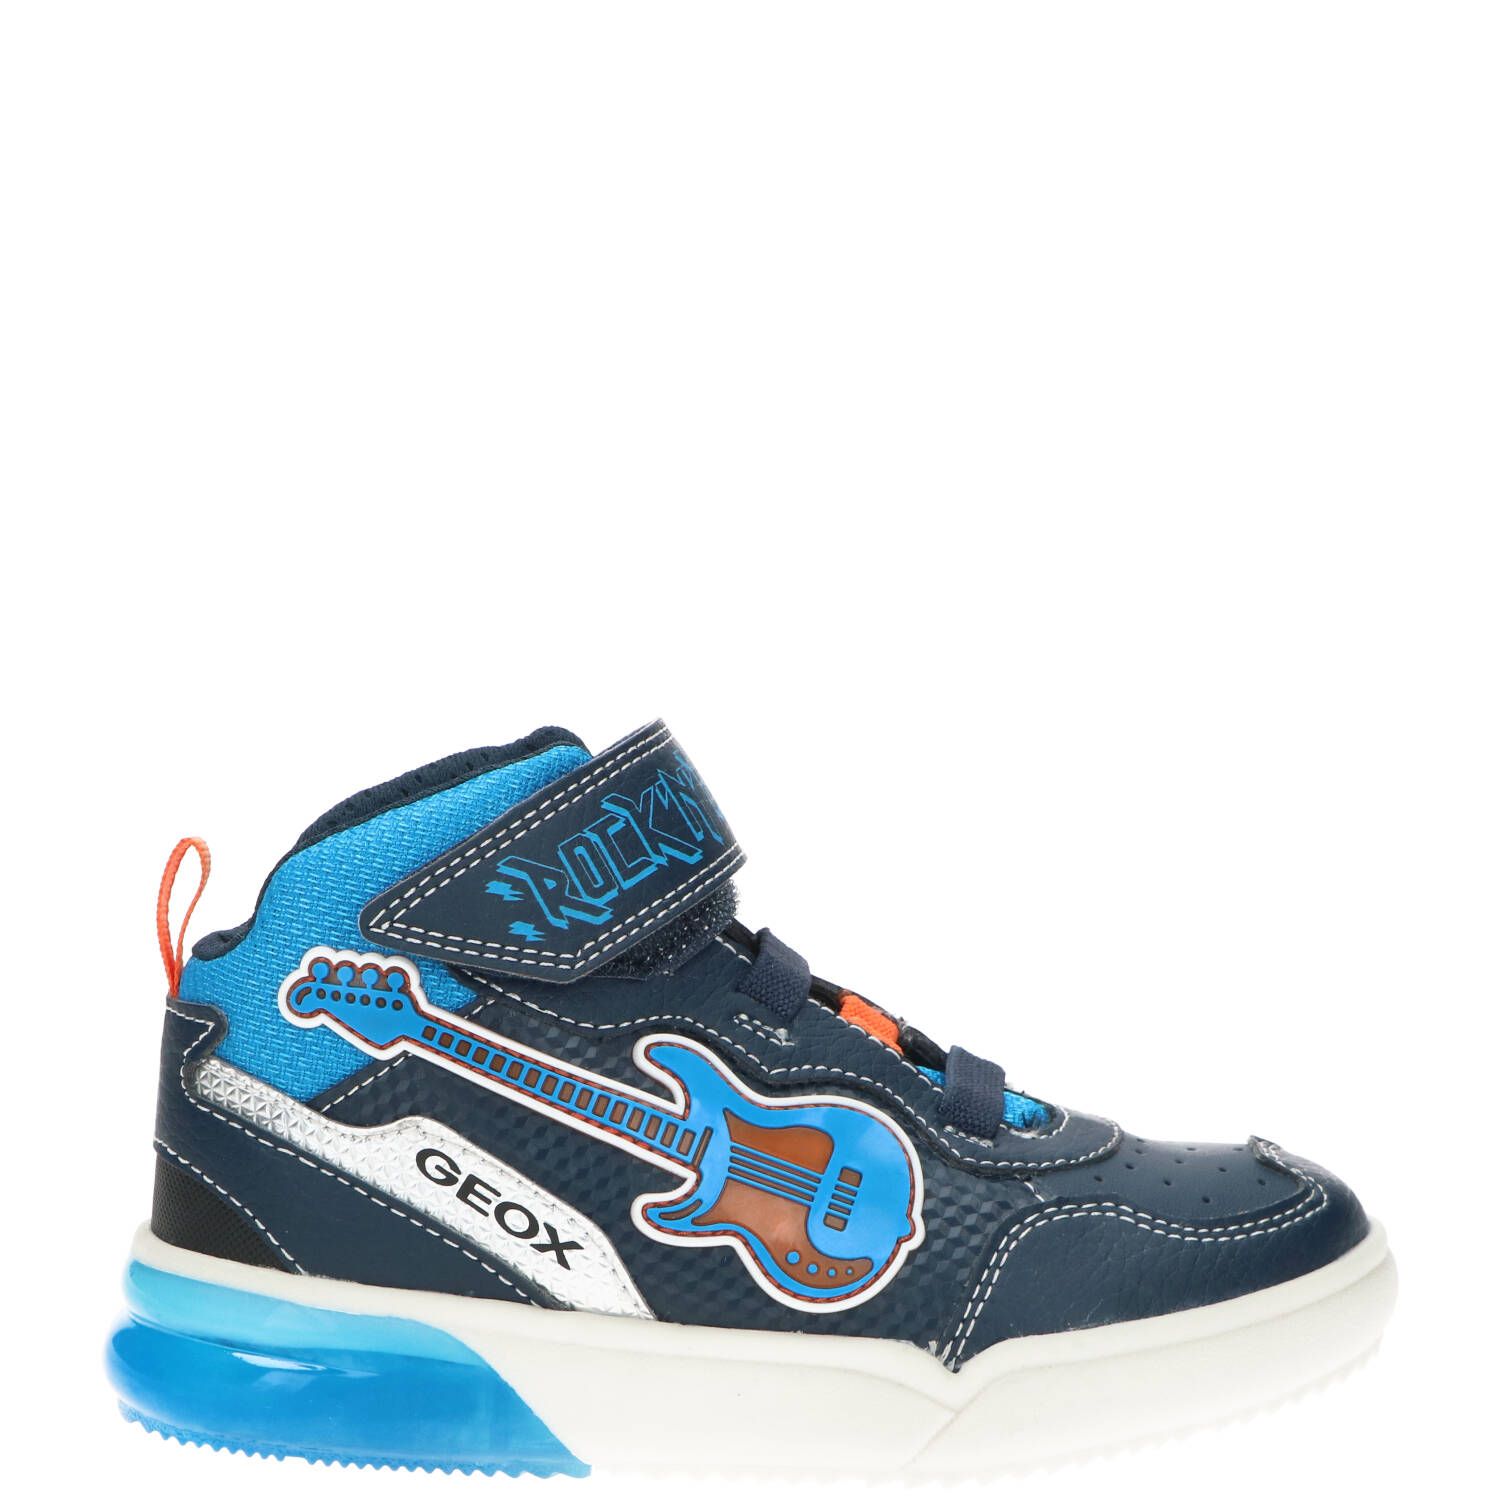 Geox Jongensboot, Lage schoenen, Jongen, Maat 32, blauw